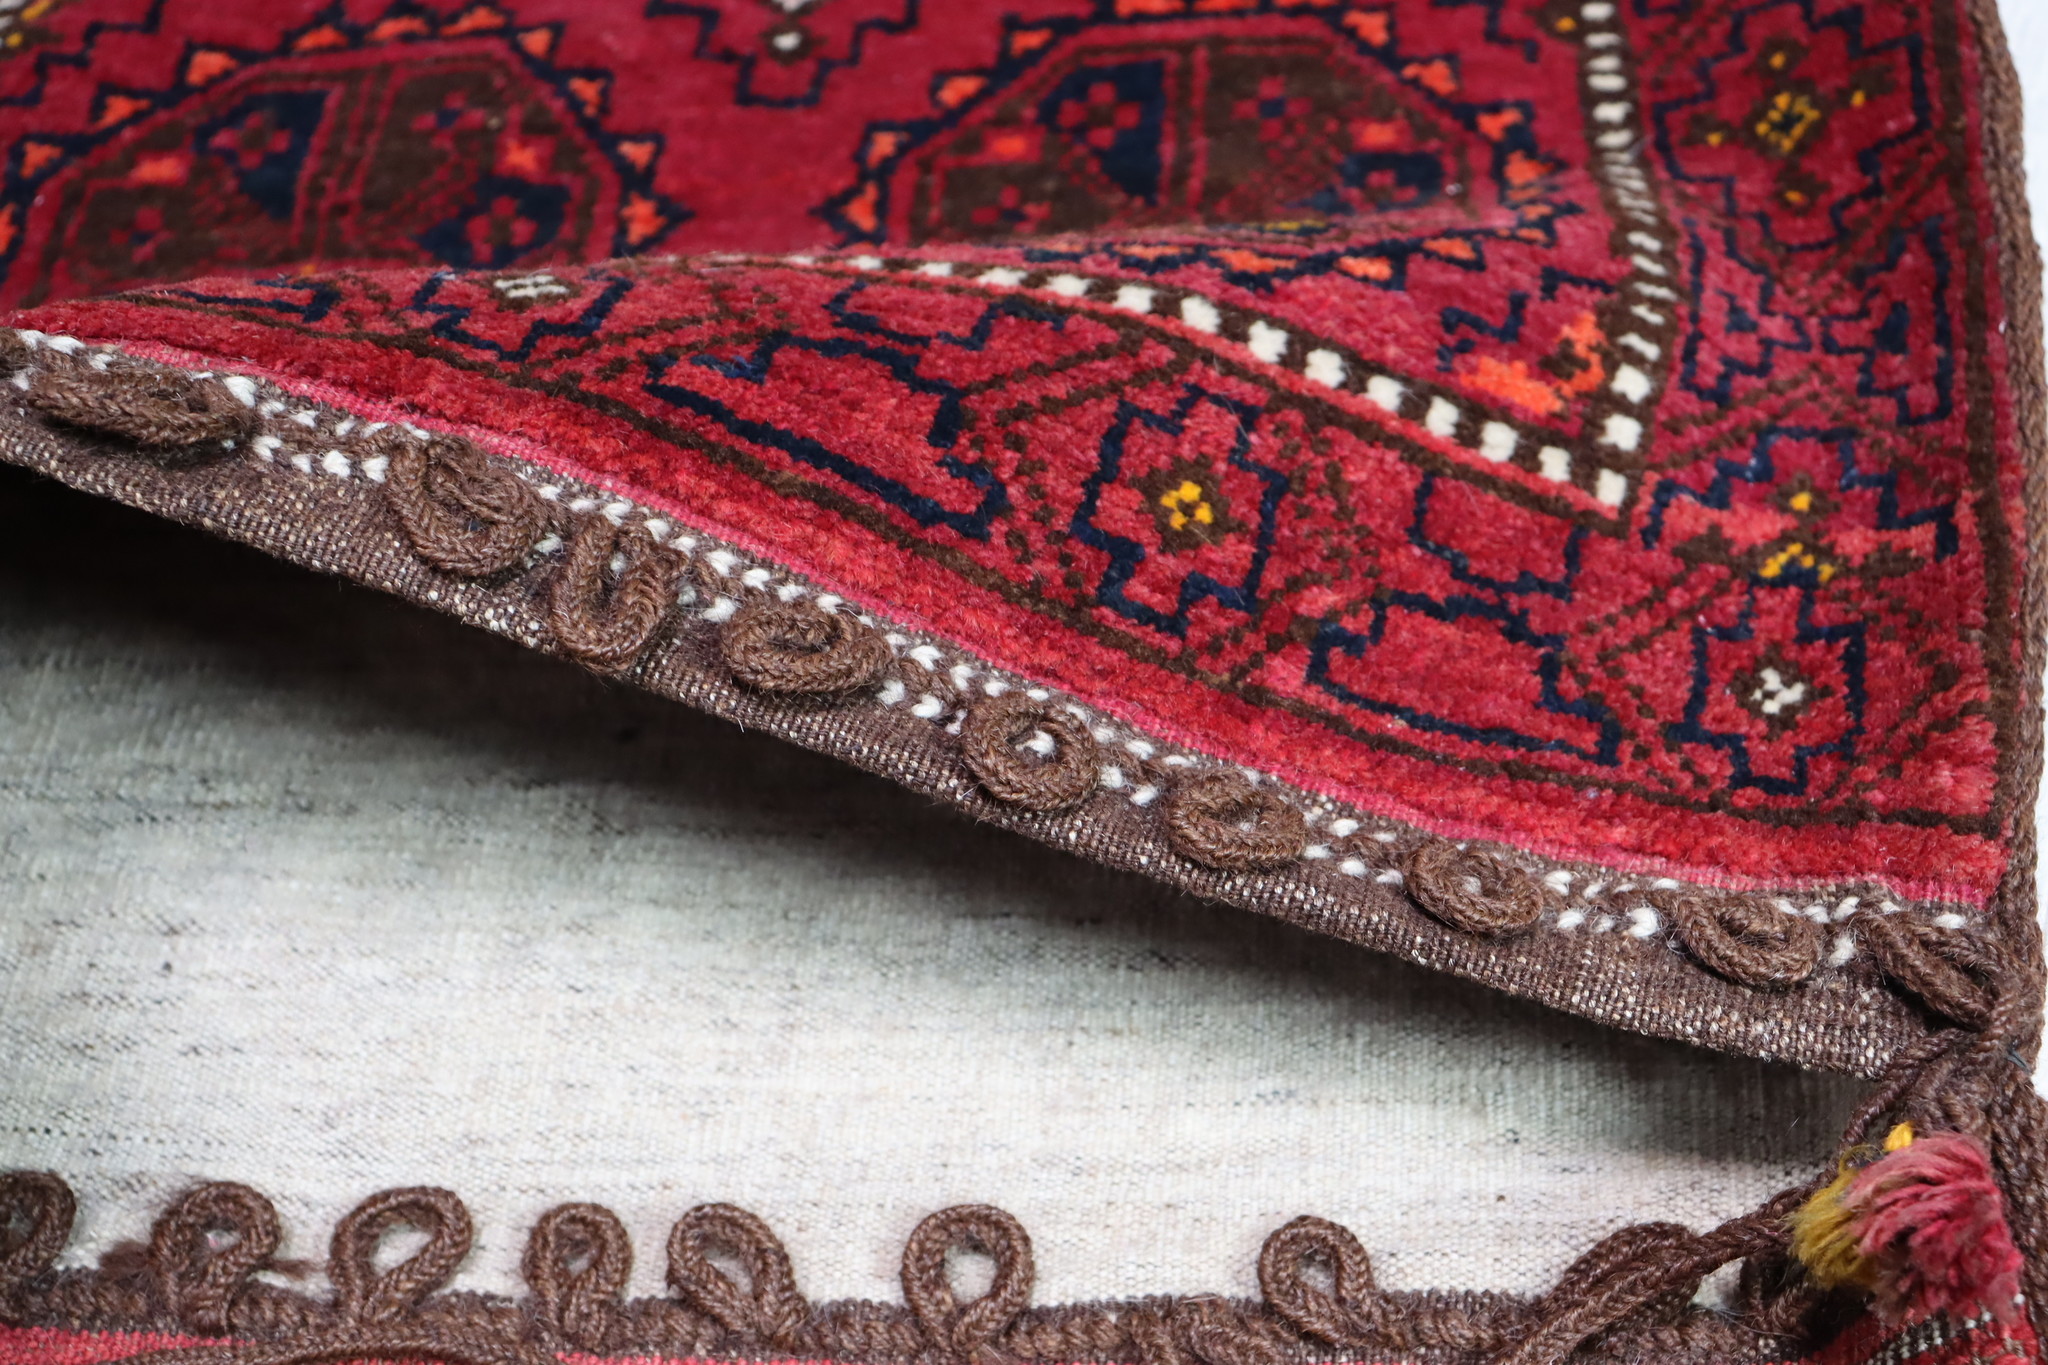 119x60 cm Antik orient Turkmen Teppich nomaden sitzkissen cushion Doppeltasche Satteltasche (Khorjin) Torba Bukhara Turkmenistan Nr: 22/18